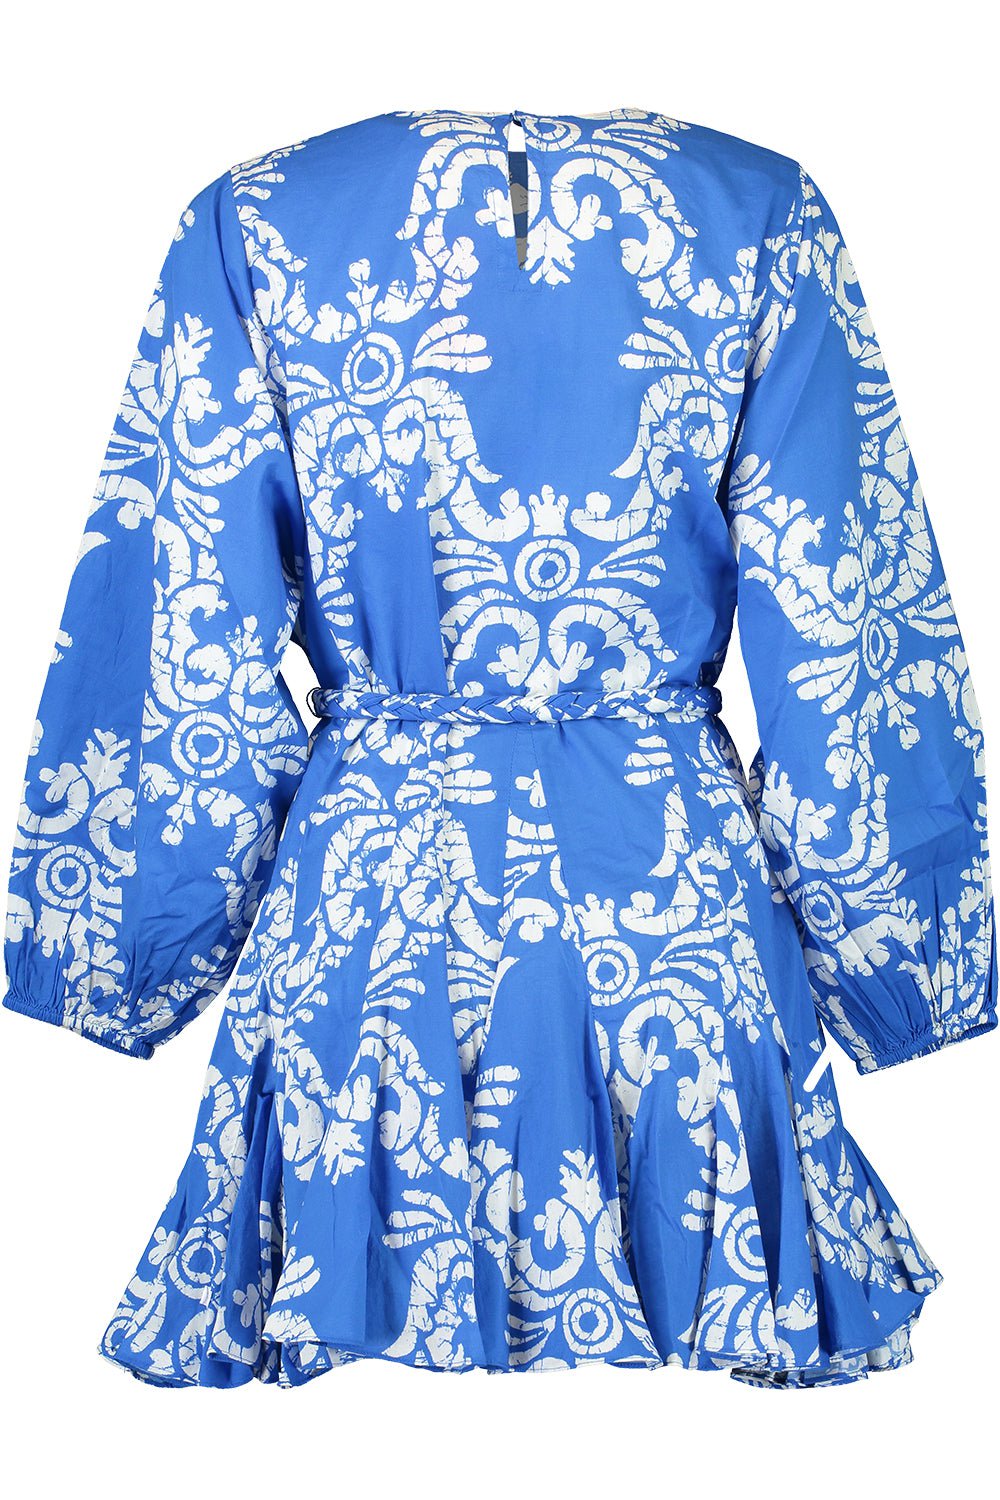 Ella Dress - Batik Grid CLOTHINGDRESSCASUAL RHODE   